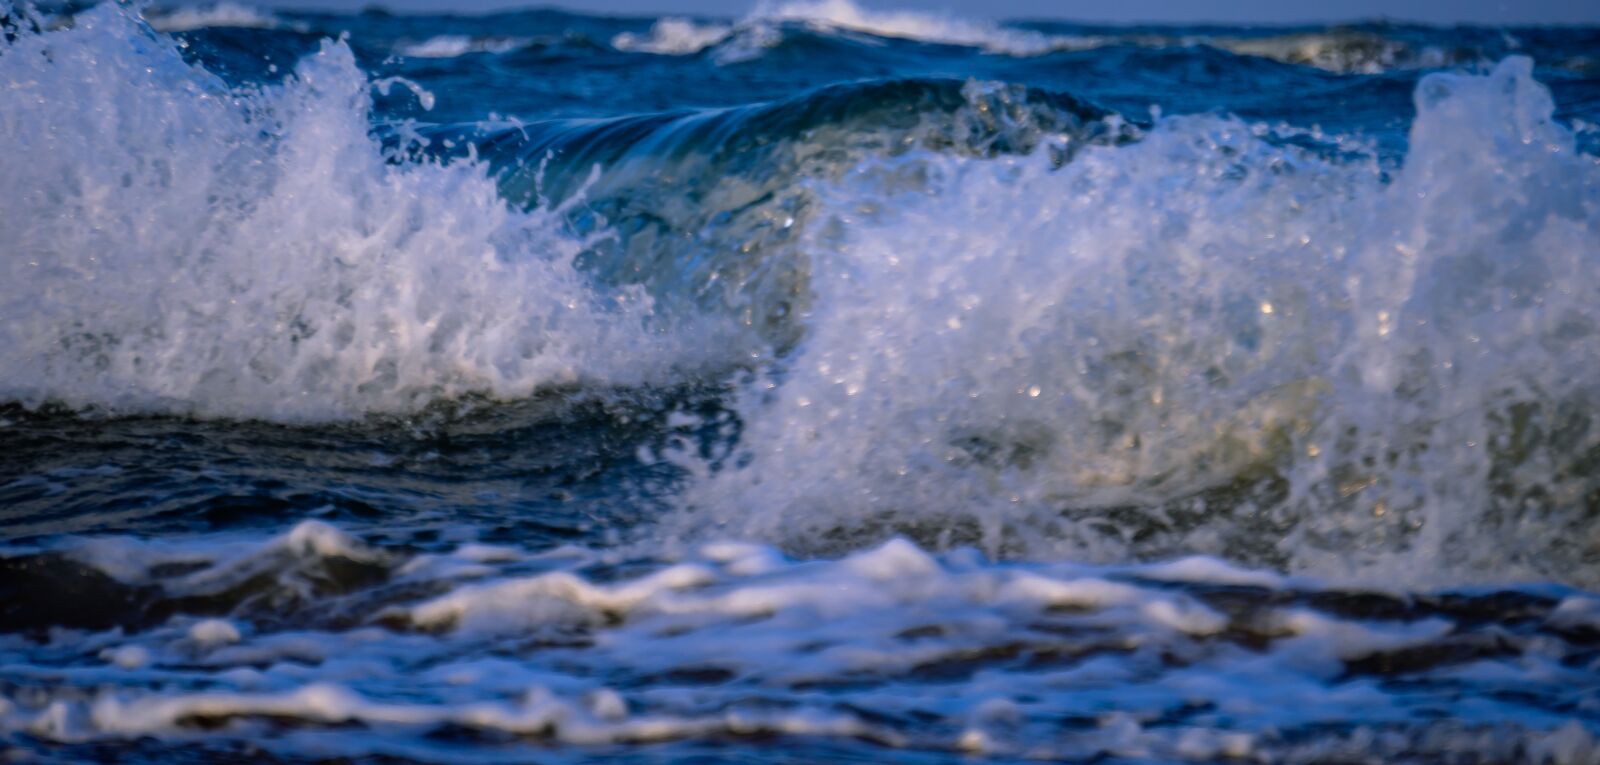 Sony a6400 sample photo. Sea, ocean, beach photography